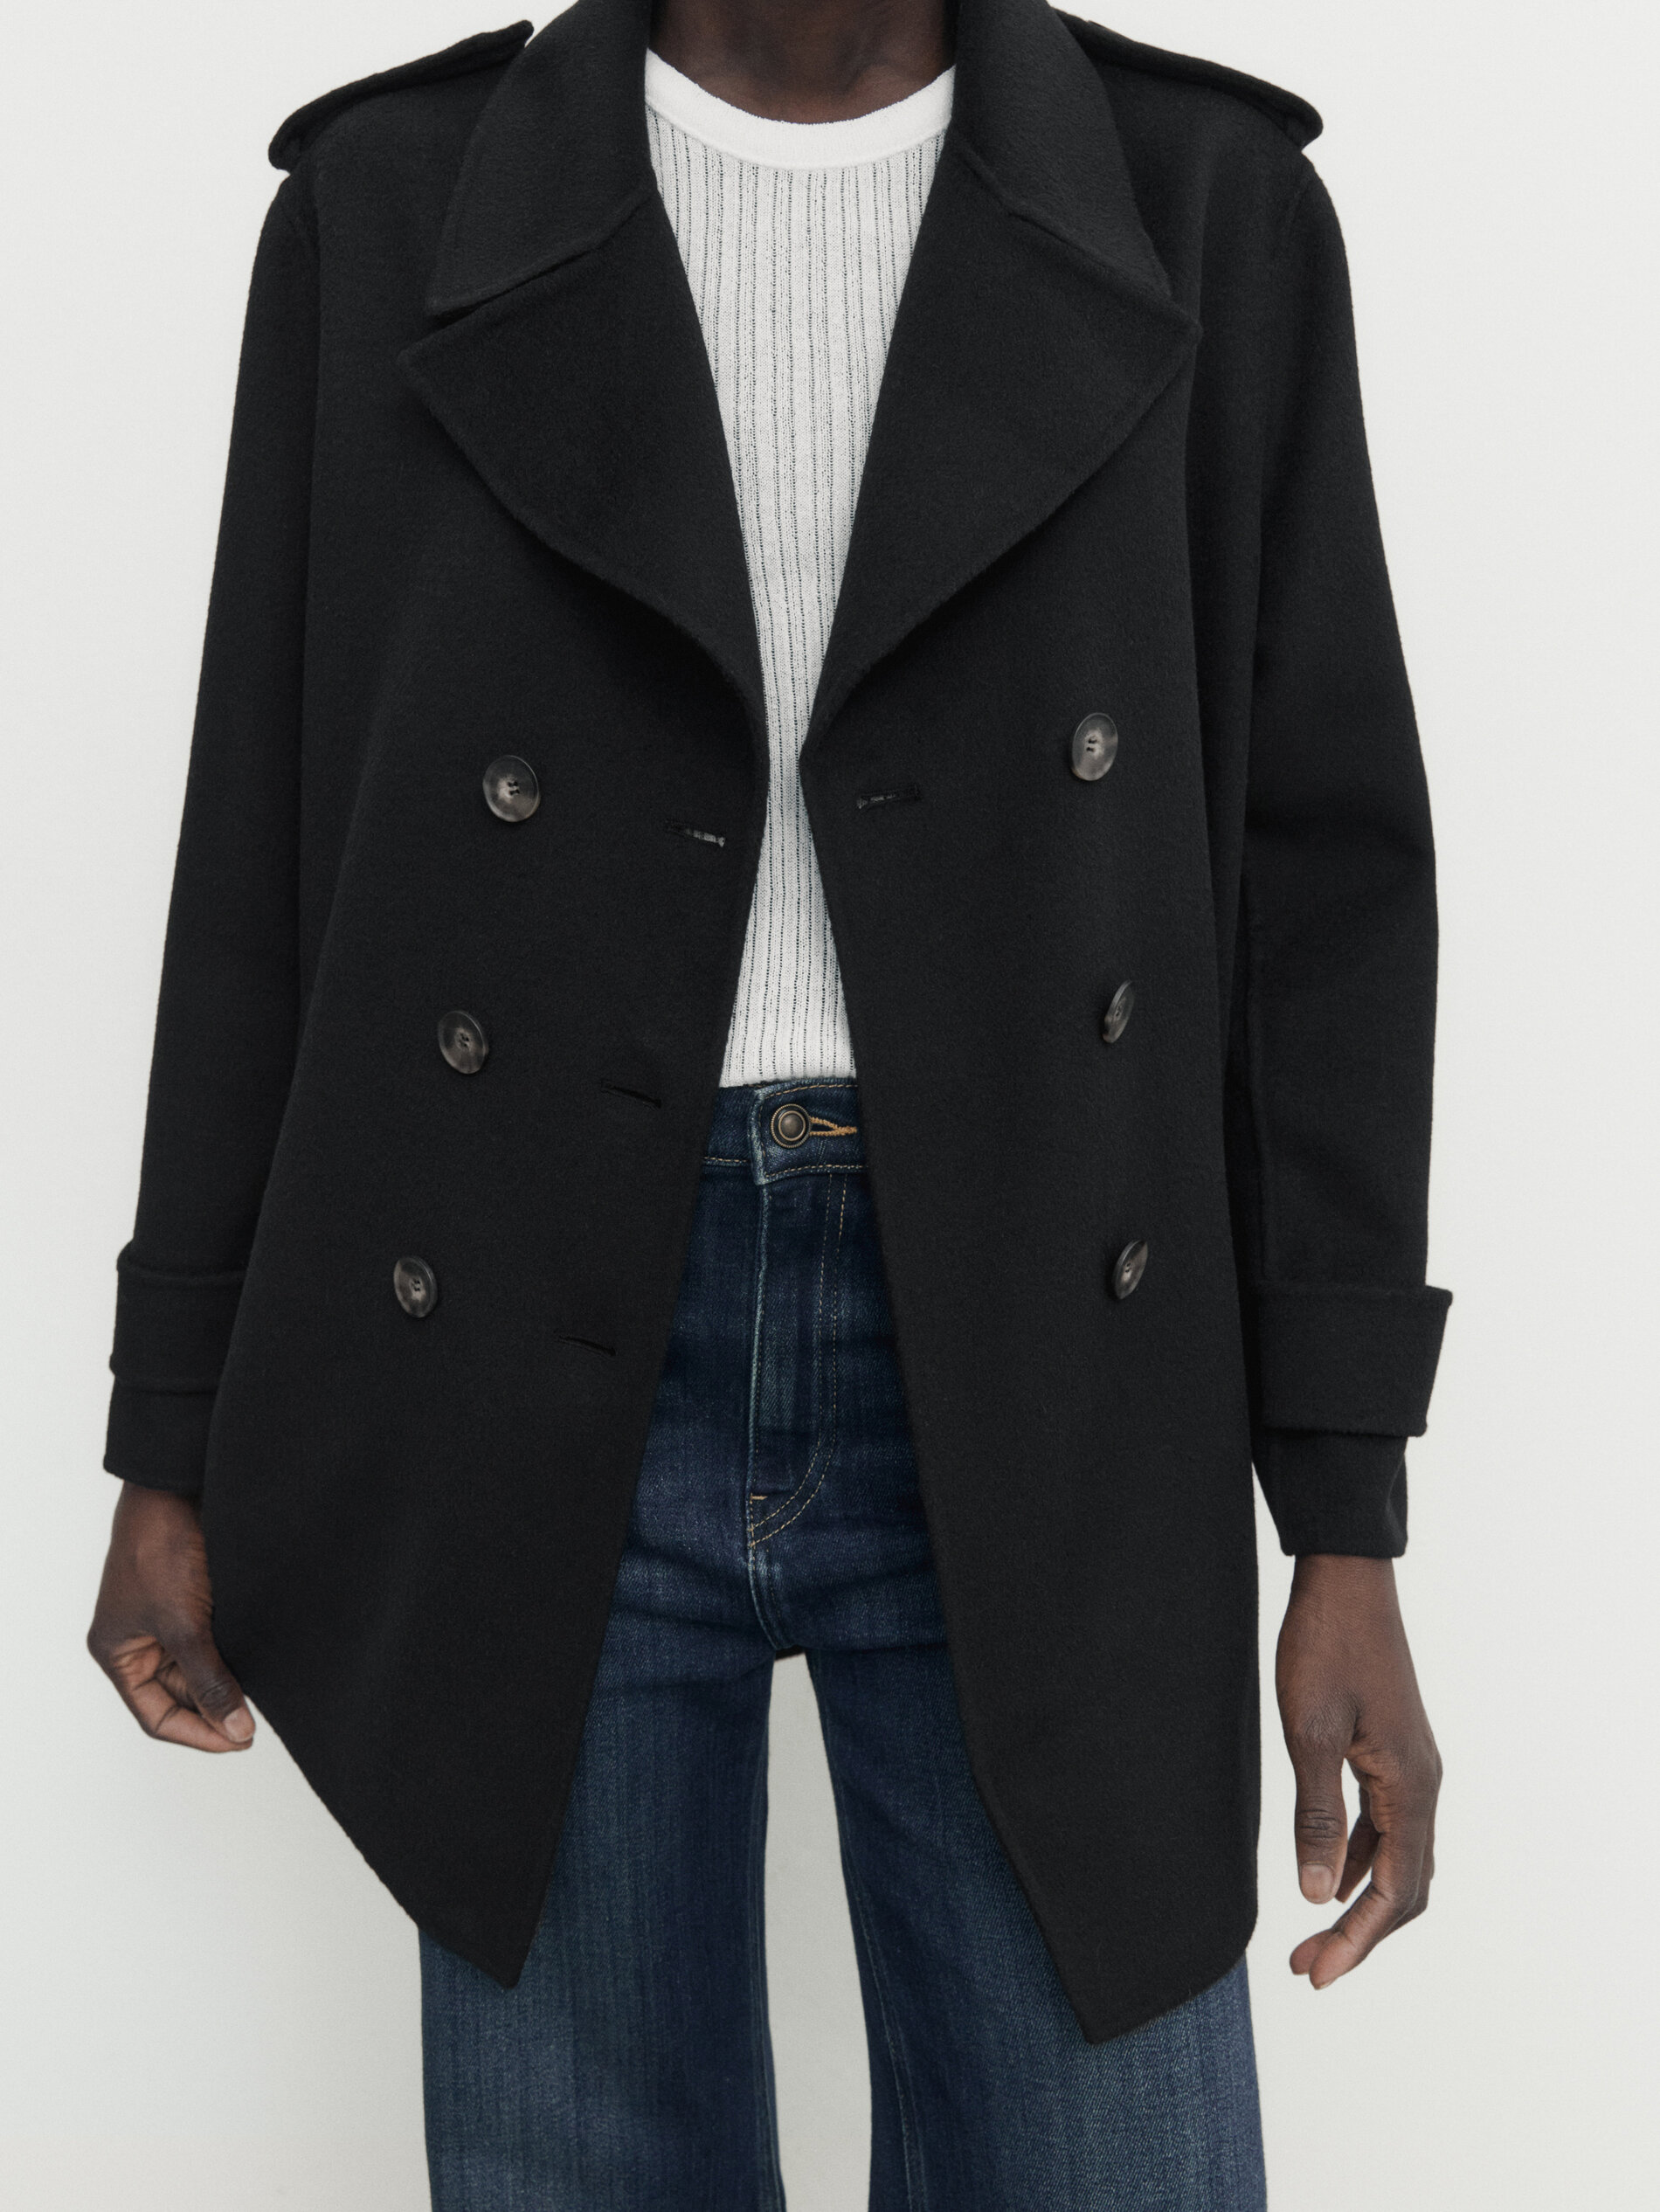 Abrigo chaquetón negro mezcla lana